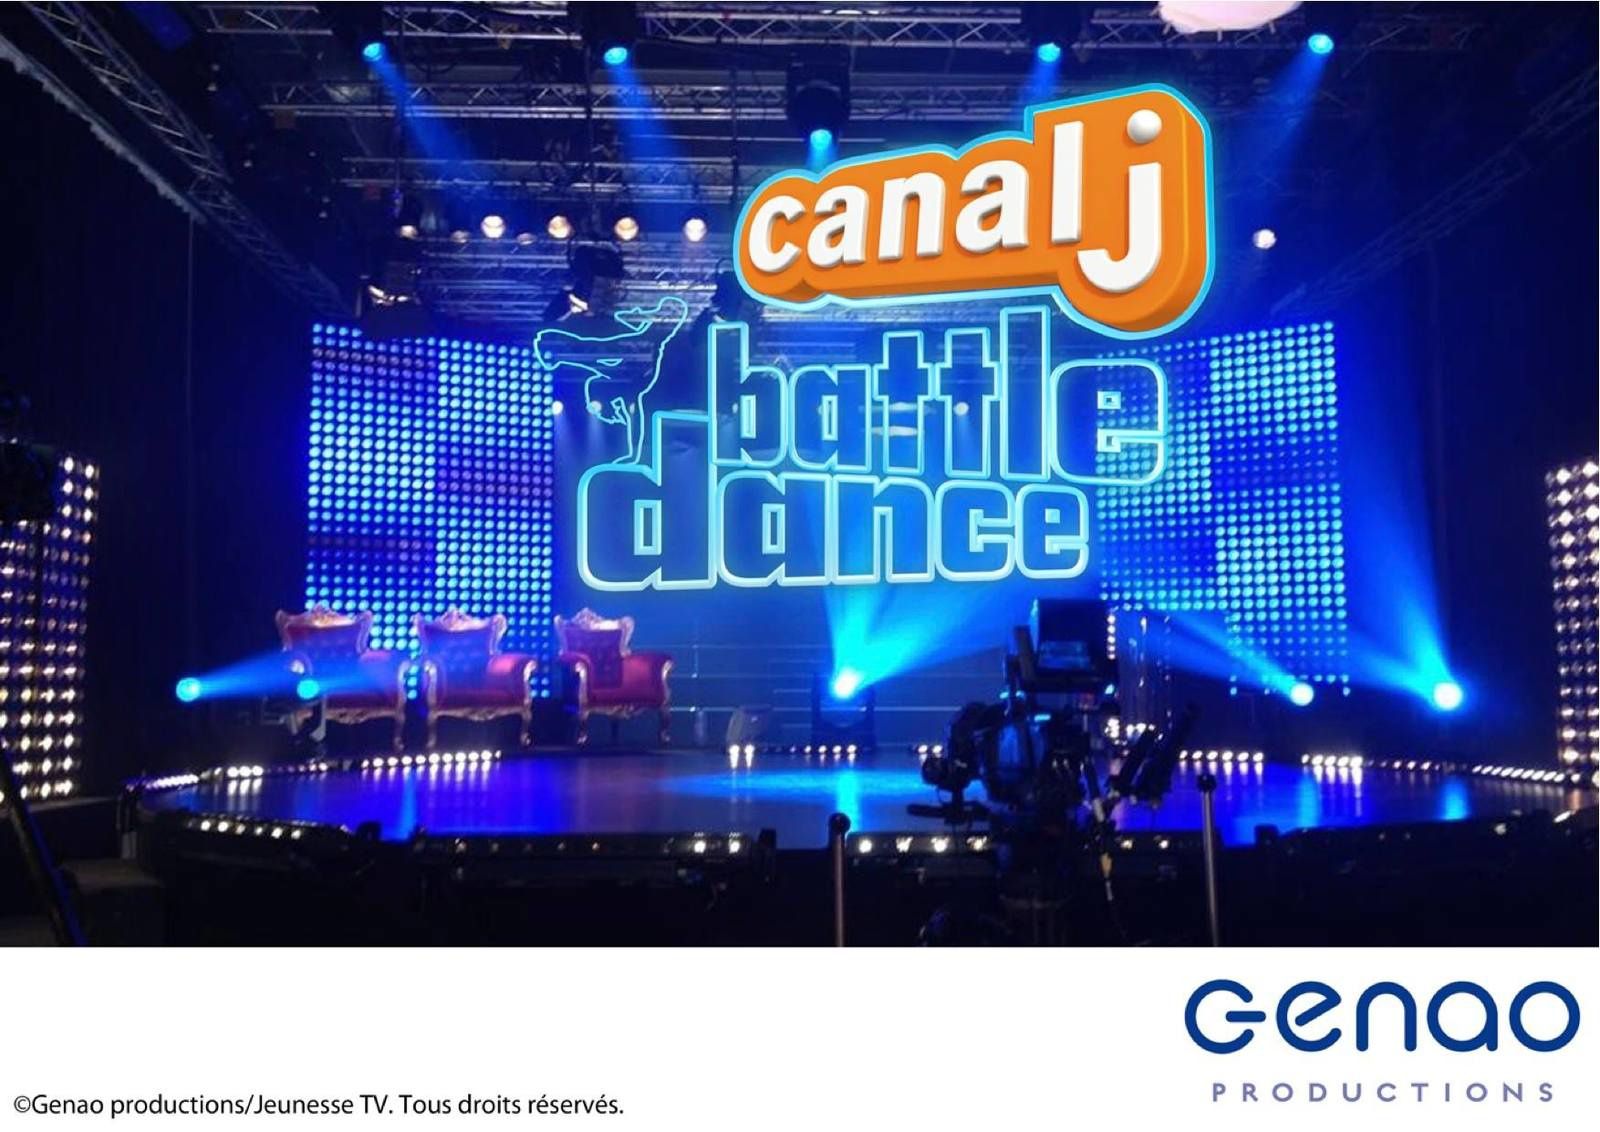 Canal J Battle Dance (BANDE ANNONCE) Prochainement sur Canal j